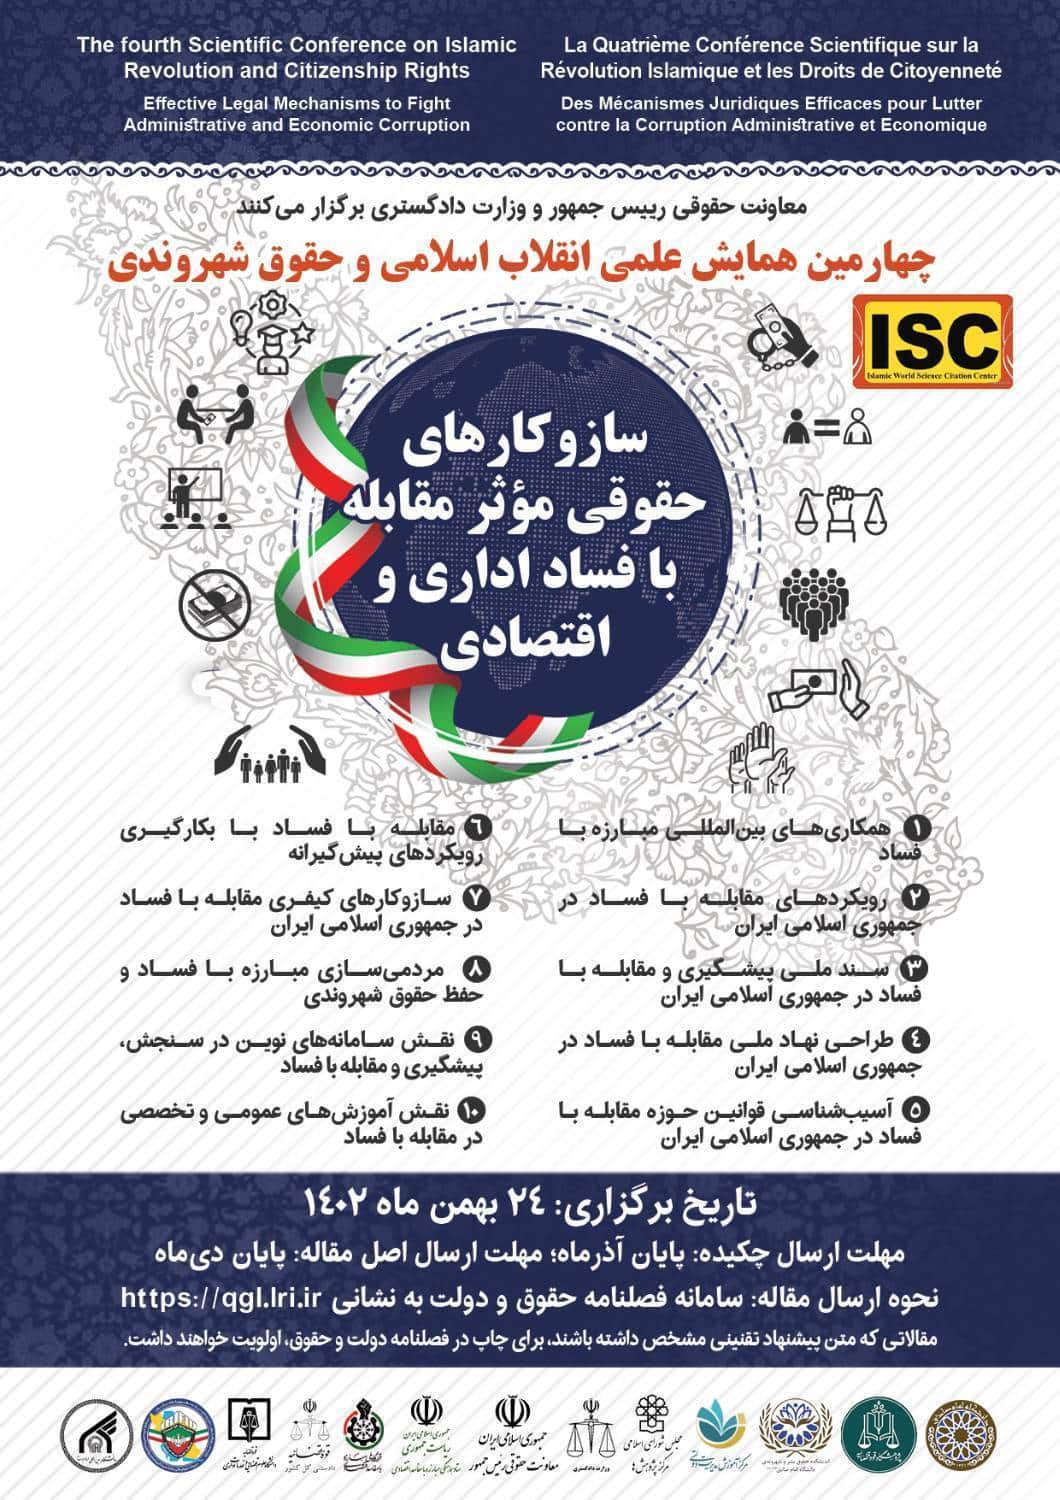 برگزاری چهارمین همایش علمی انقلاب اسلامی و حقوق شهروندی در بهمن ماه امسال